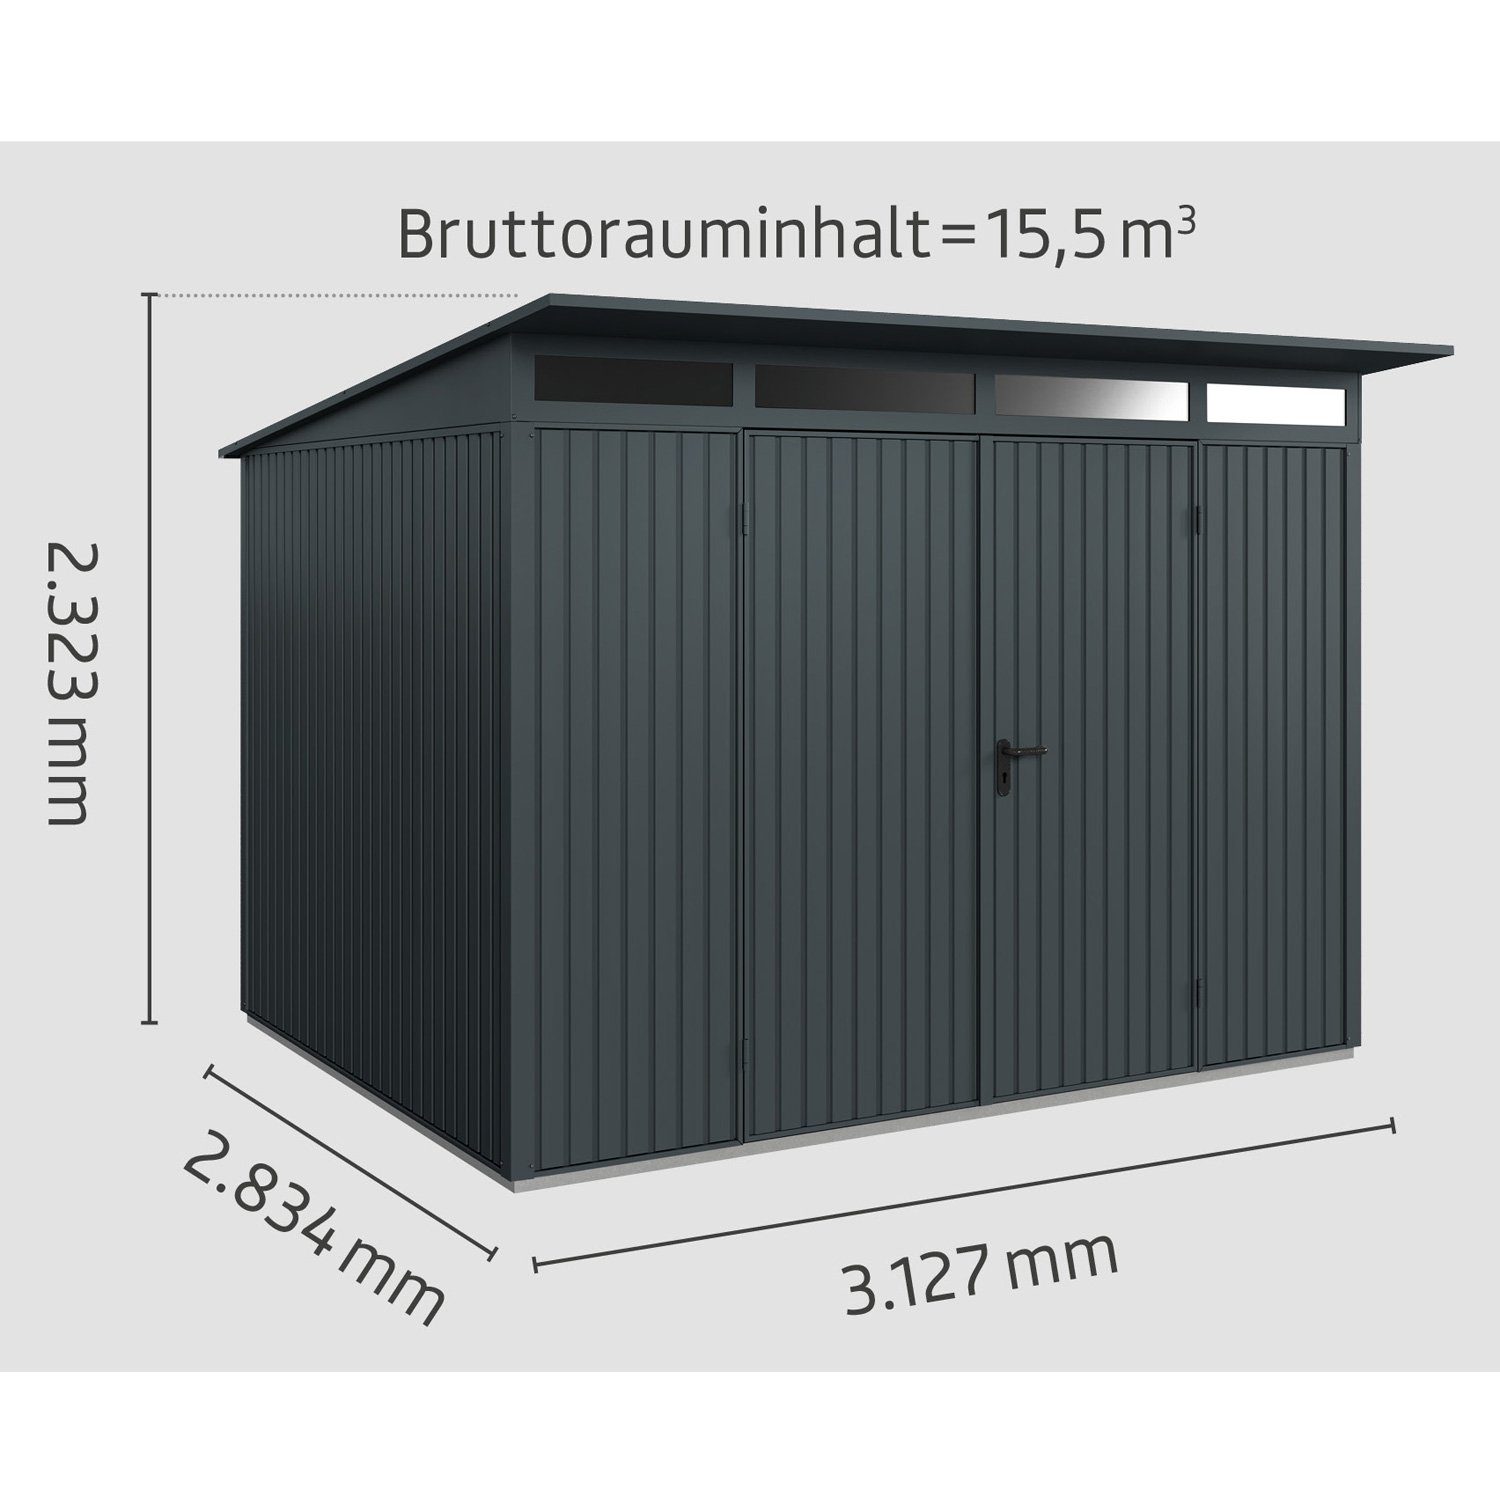 Hörmann Ecostar Gerätehaus 2-flüglige Typ anthrazitgrau Metall-Gerätehaus Tür mit Pultdach Trend 3